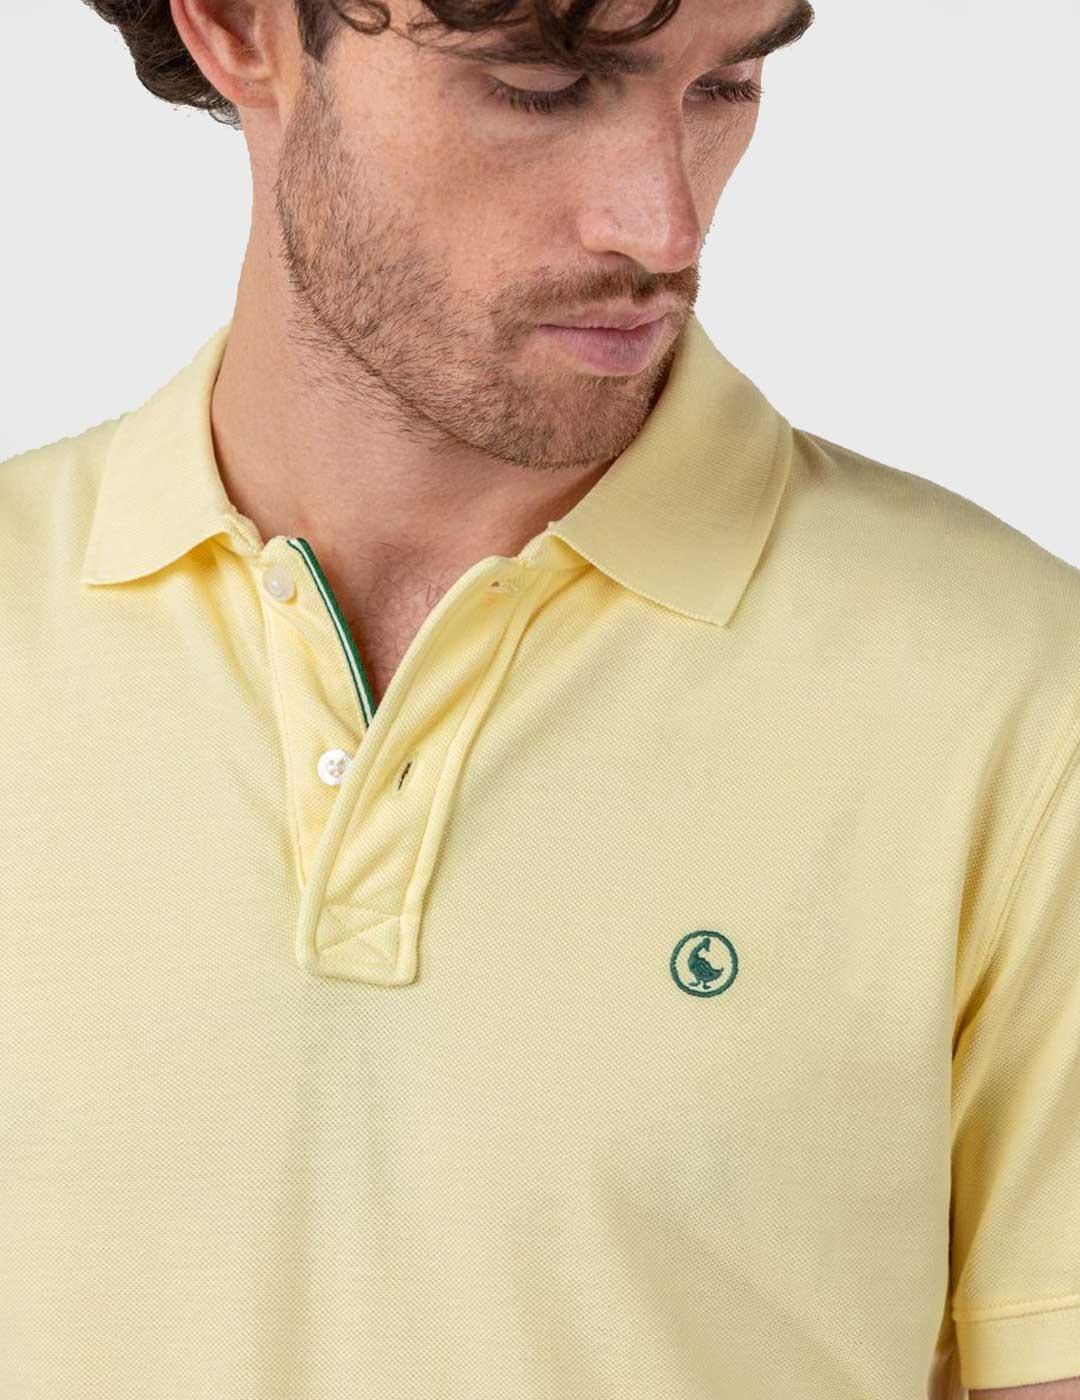 El Ganso Polo Pique Garment Dyed amarillo para hombre